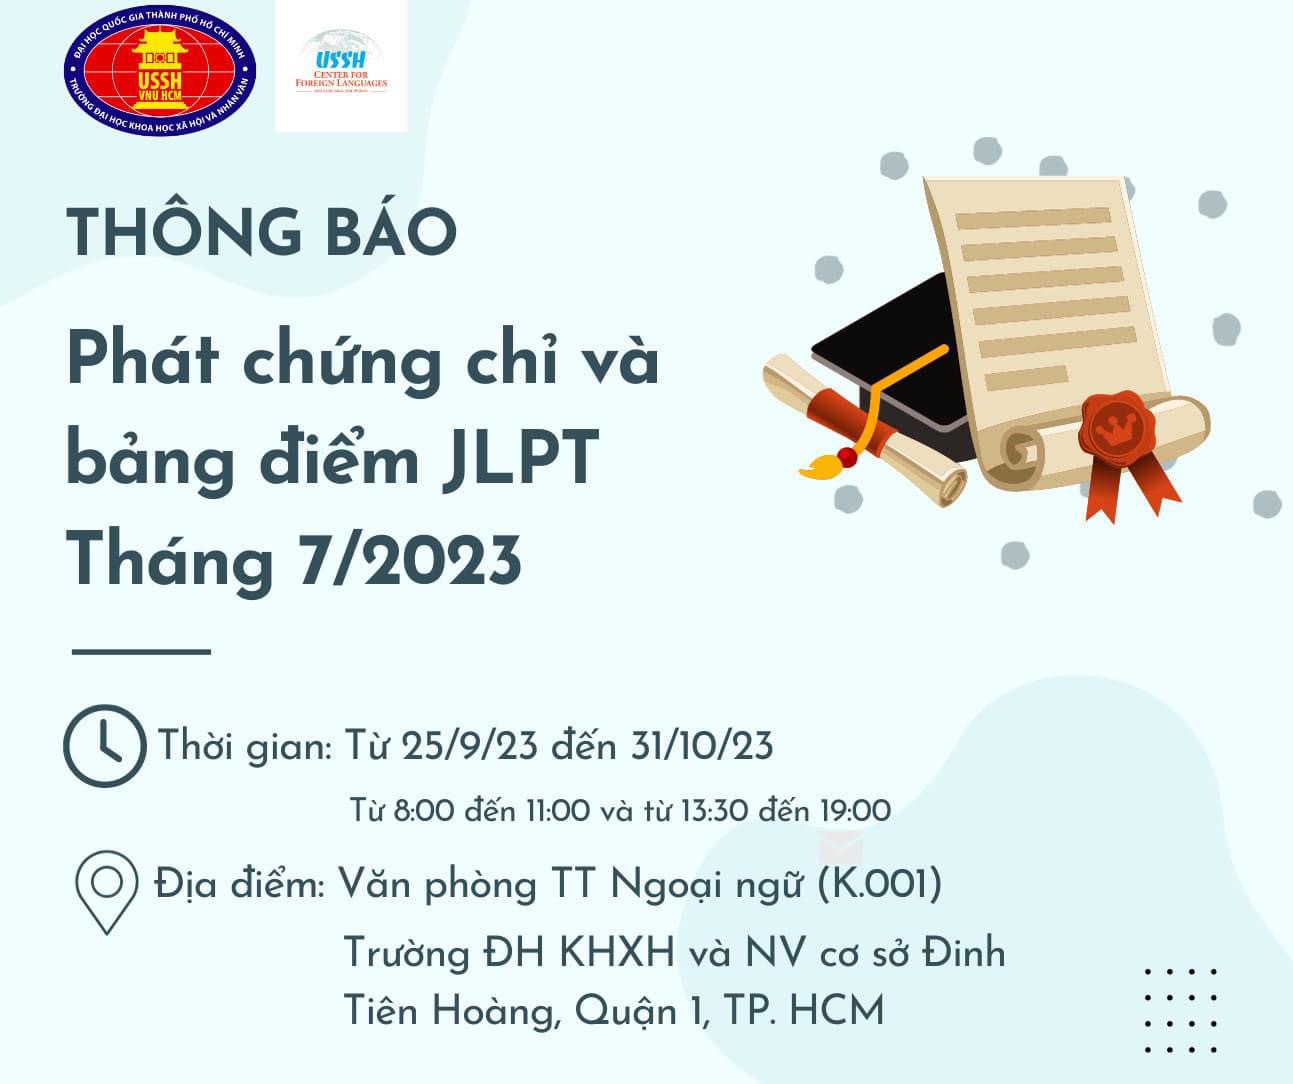 Thời gian Trả chứng chỉ và bảng điểm thi JLPT 7/2023 ở Việt Nam Ở các khu vực Hà Nội, Huế, Đà Nẵng và Hồ Chí Minh.